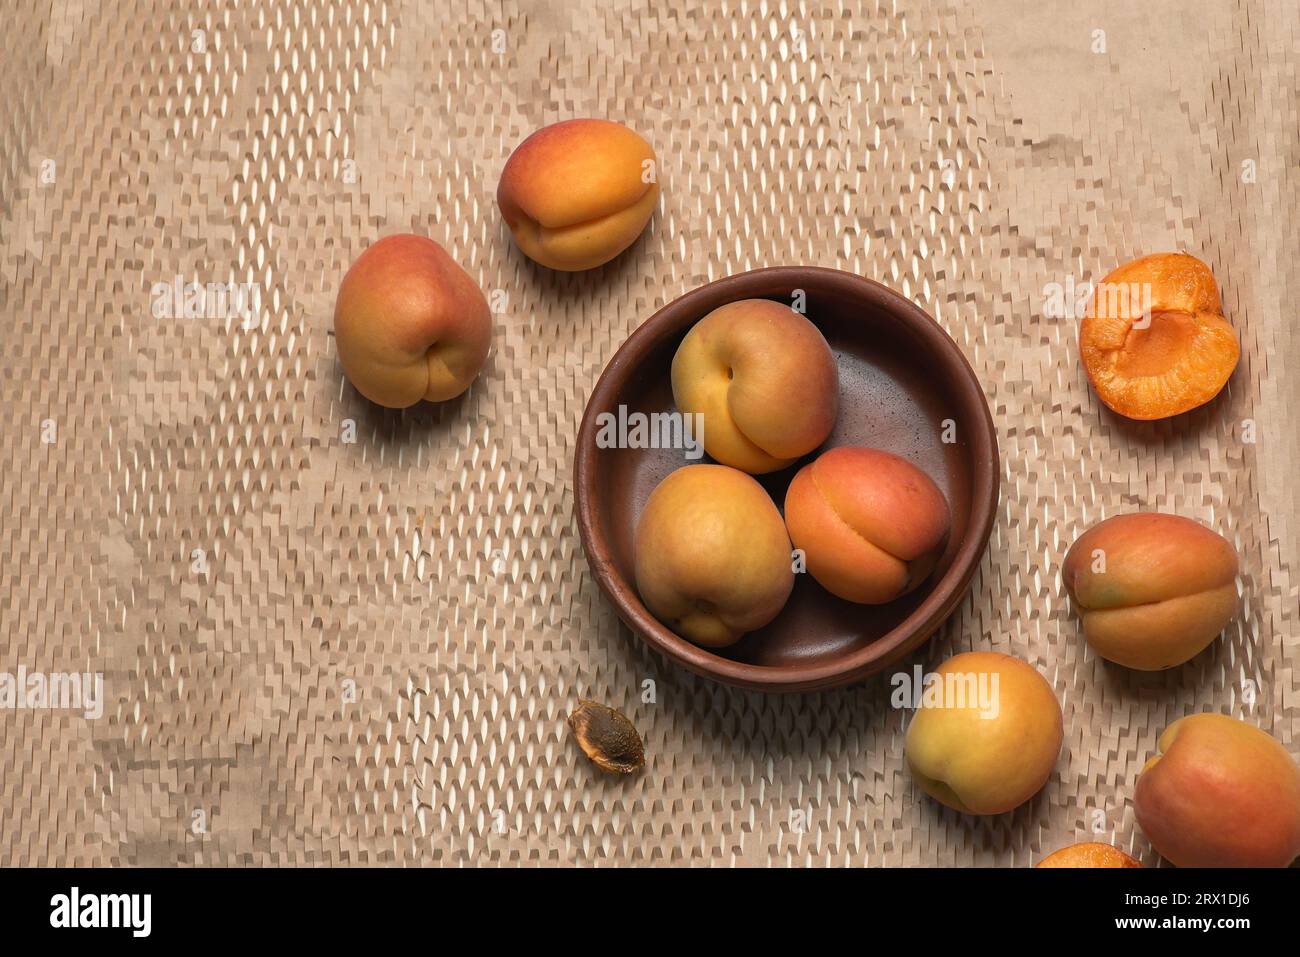 Abricots frais, mûrs et juteux dans un bol brun sur un fond clair. Fruits entiers, fruits autour du bol, graines d'abricot Banque D'Images